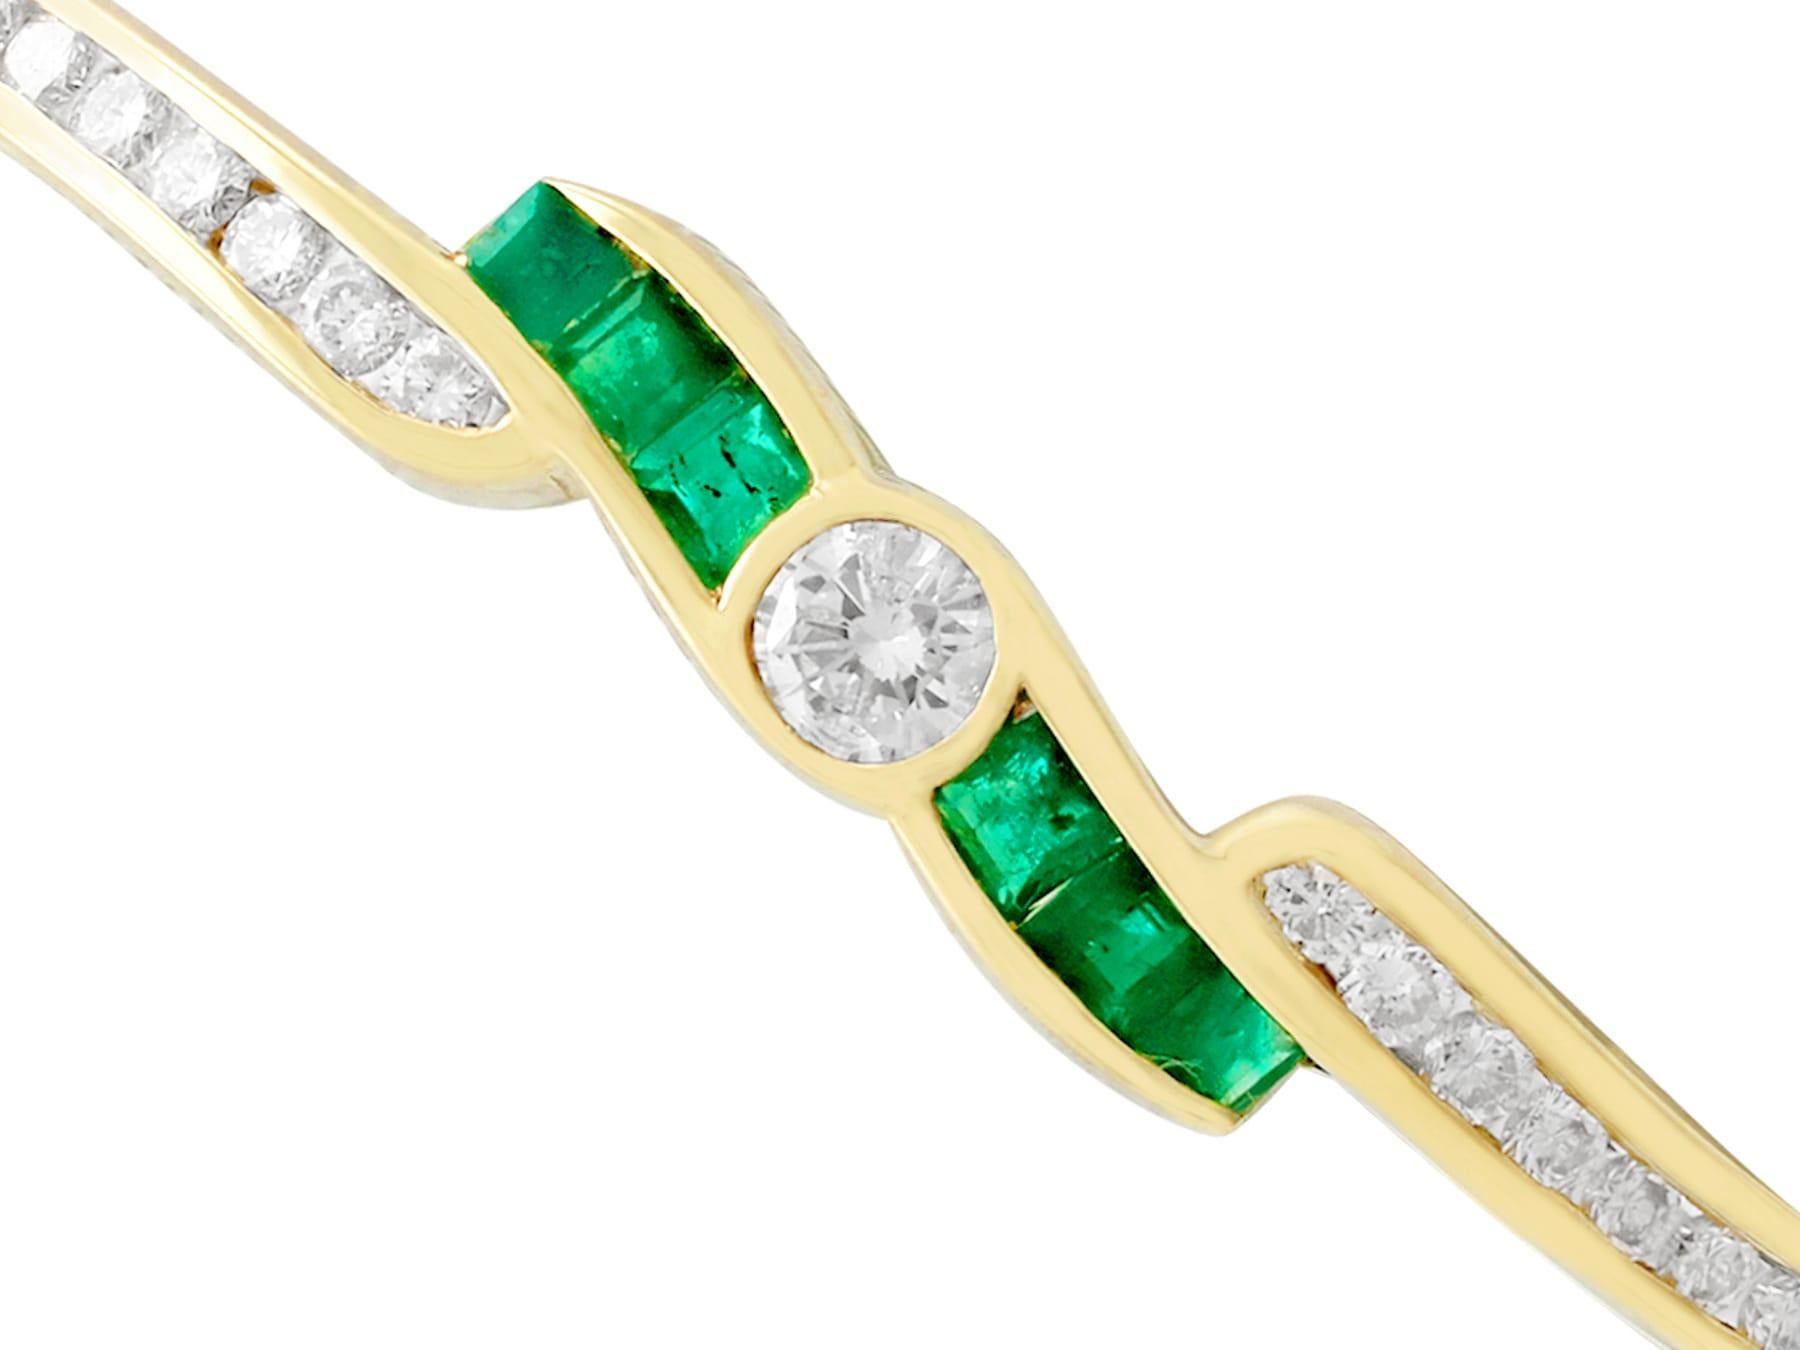 Un impressionnant bracelet contemporain en or jaune 18 carats, composé d'une émeraude de 1,50 carat et d'un diamant de 1,36 carat, fait partie de nos diverses collections de bijoux en pierres précieuses.

Ce bracelet exceptionnel, fin et